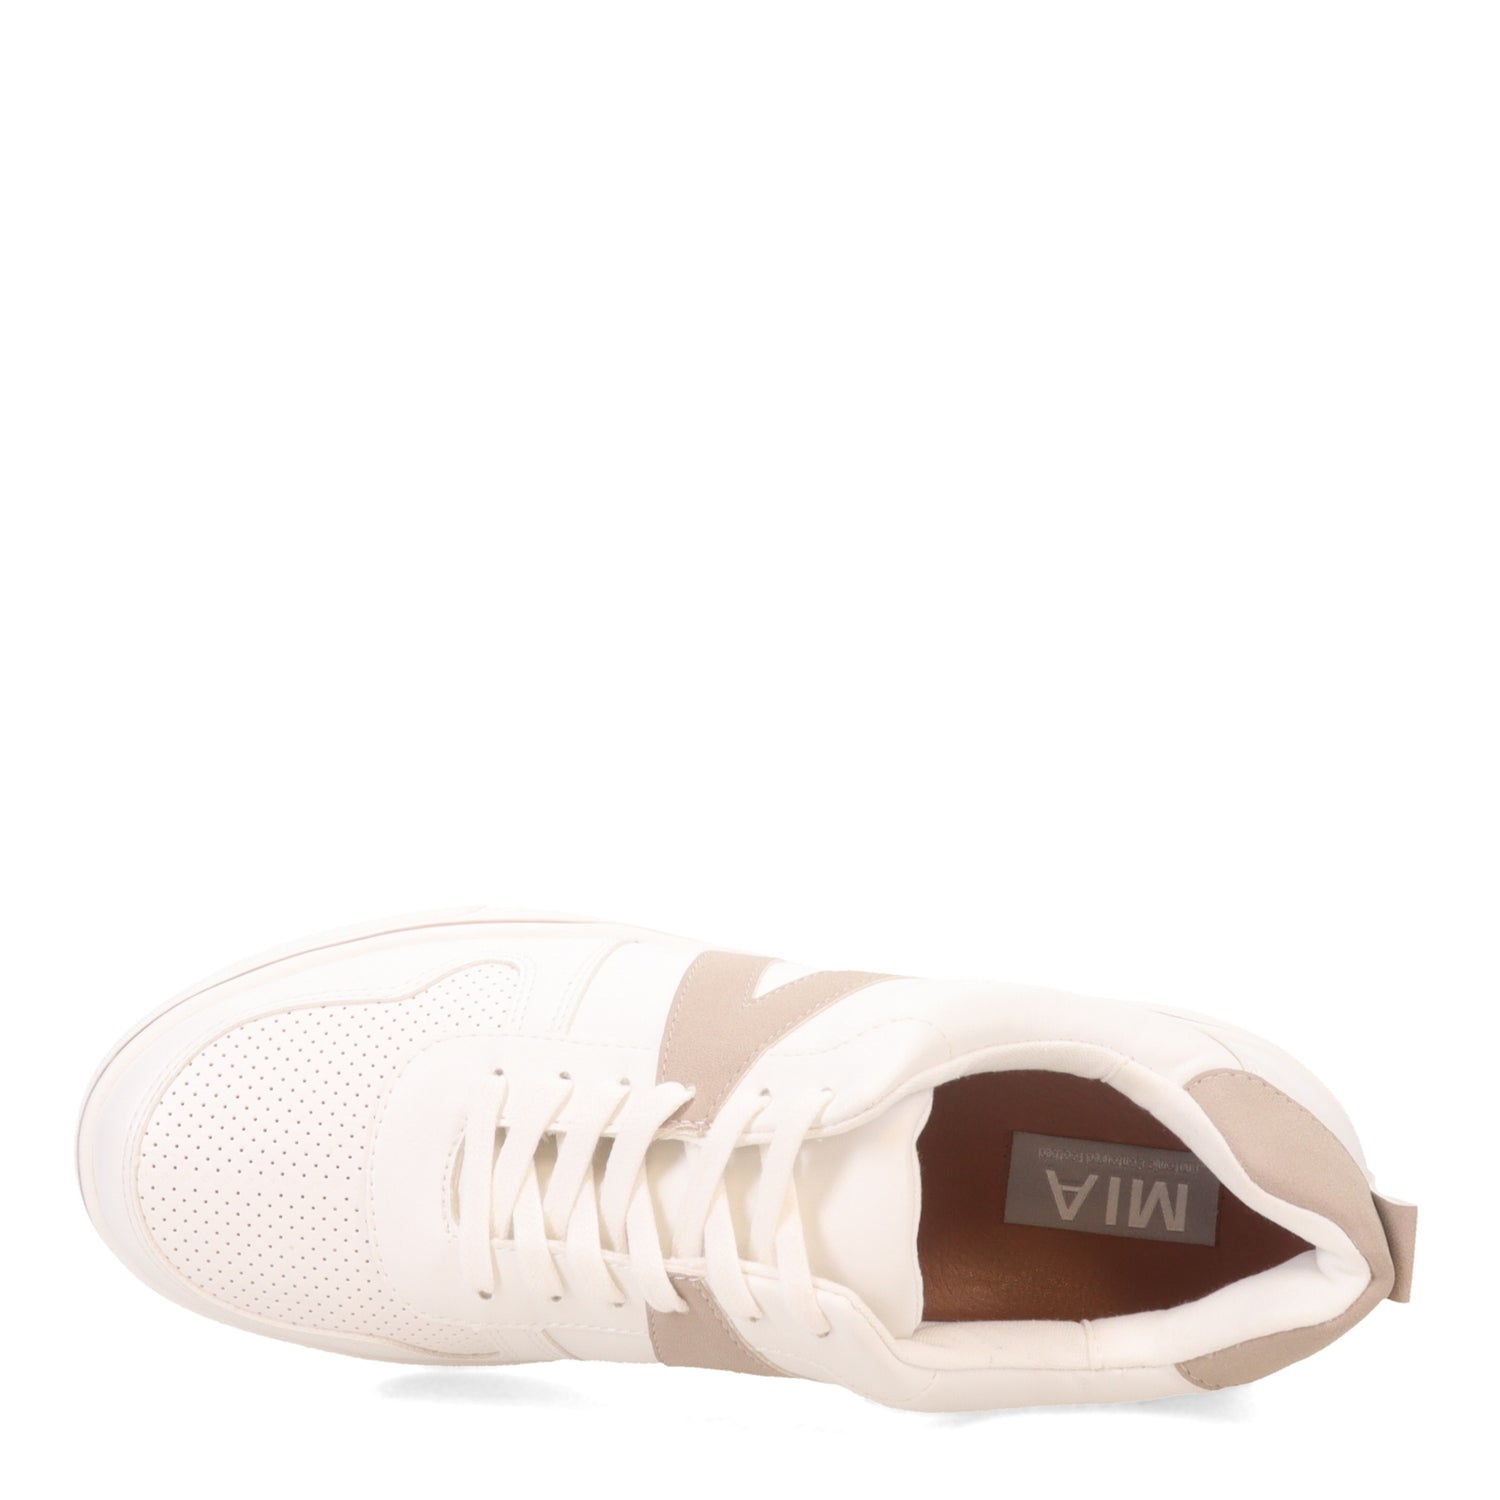 Peltz Shoes  Women's MIA Alta Sneaker White/Cement MH-1190-WHITE